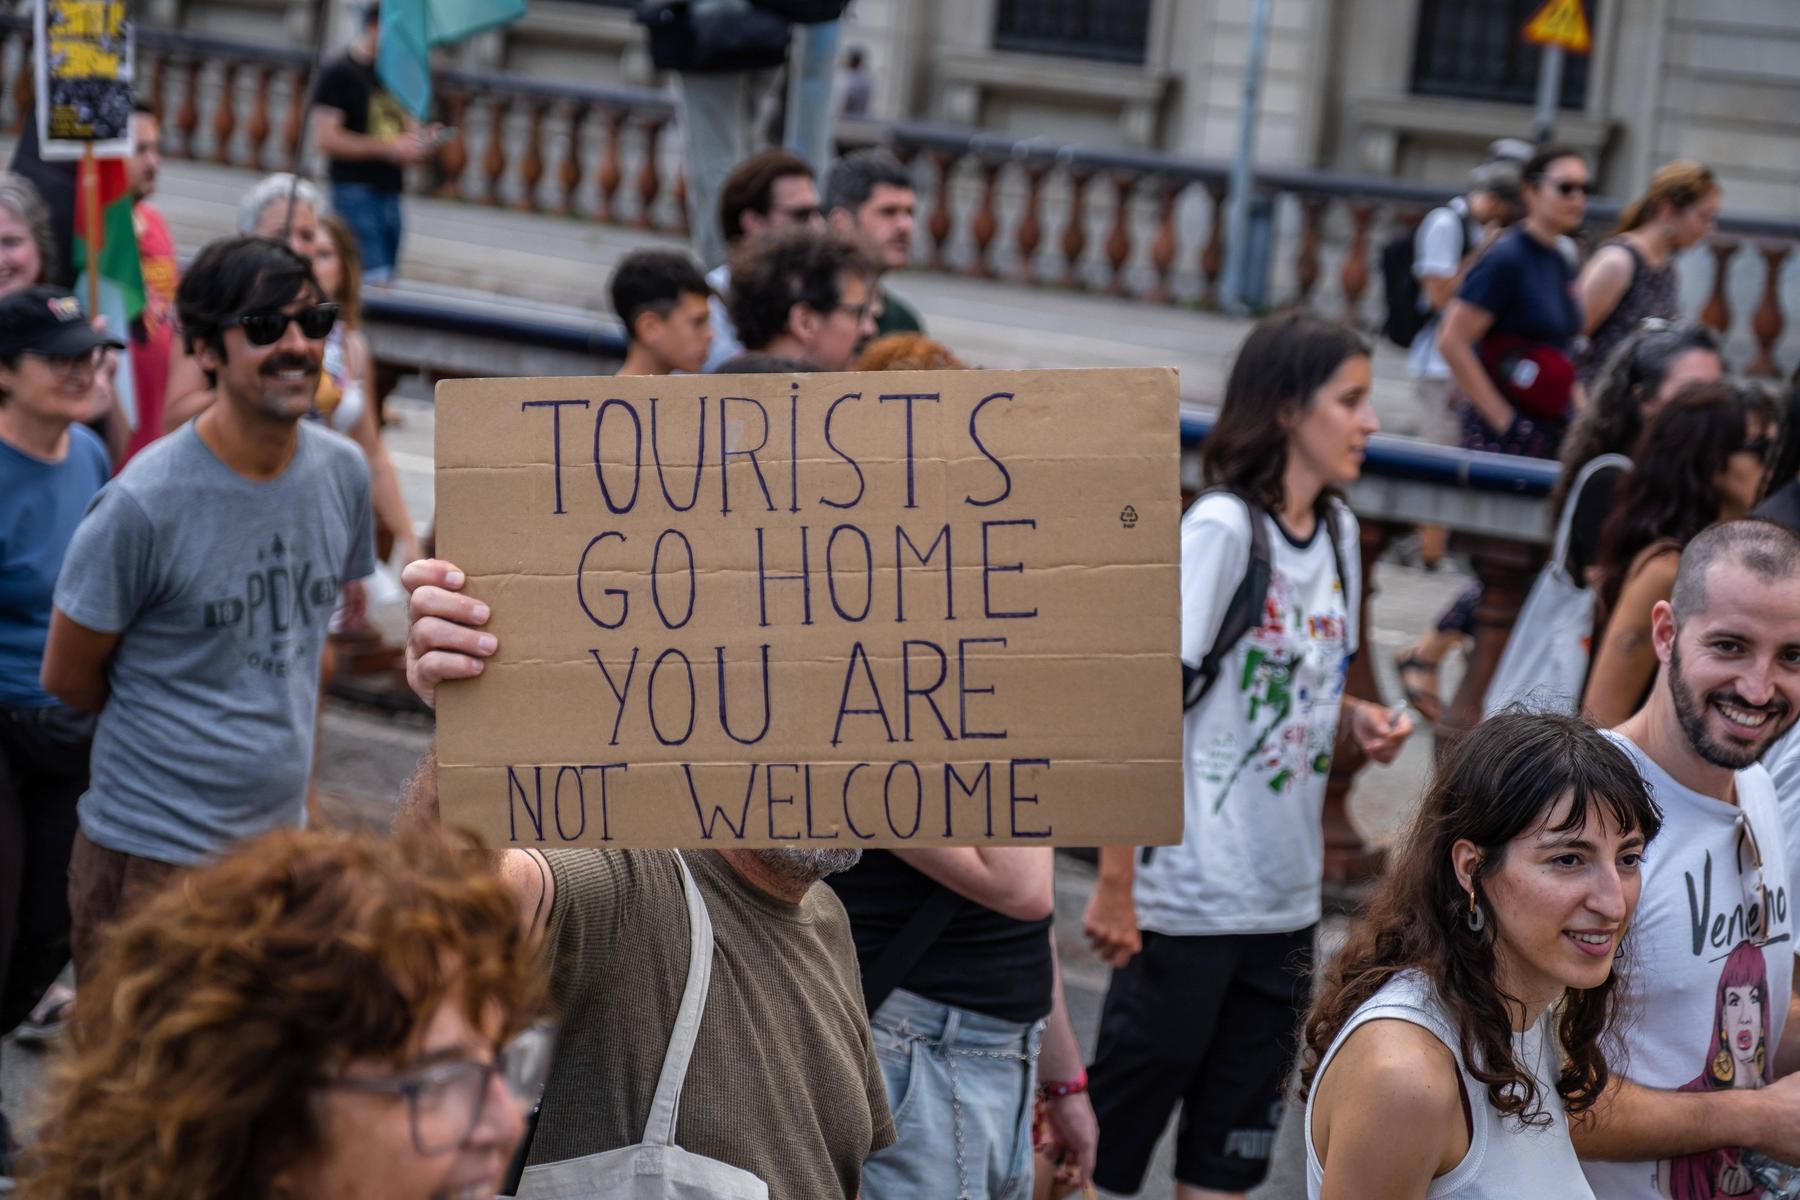 Belastung für Bewohner: Barcelona will Eintrittsgebühr für Kreuzfahrttouristen deutlich erhöhen